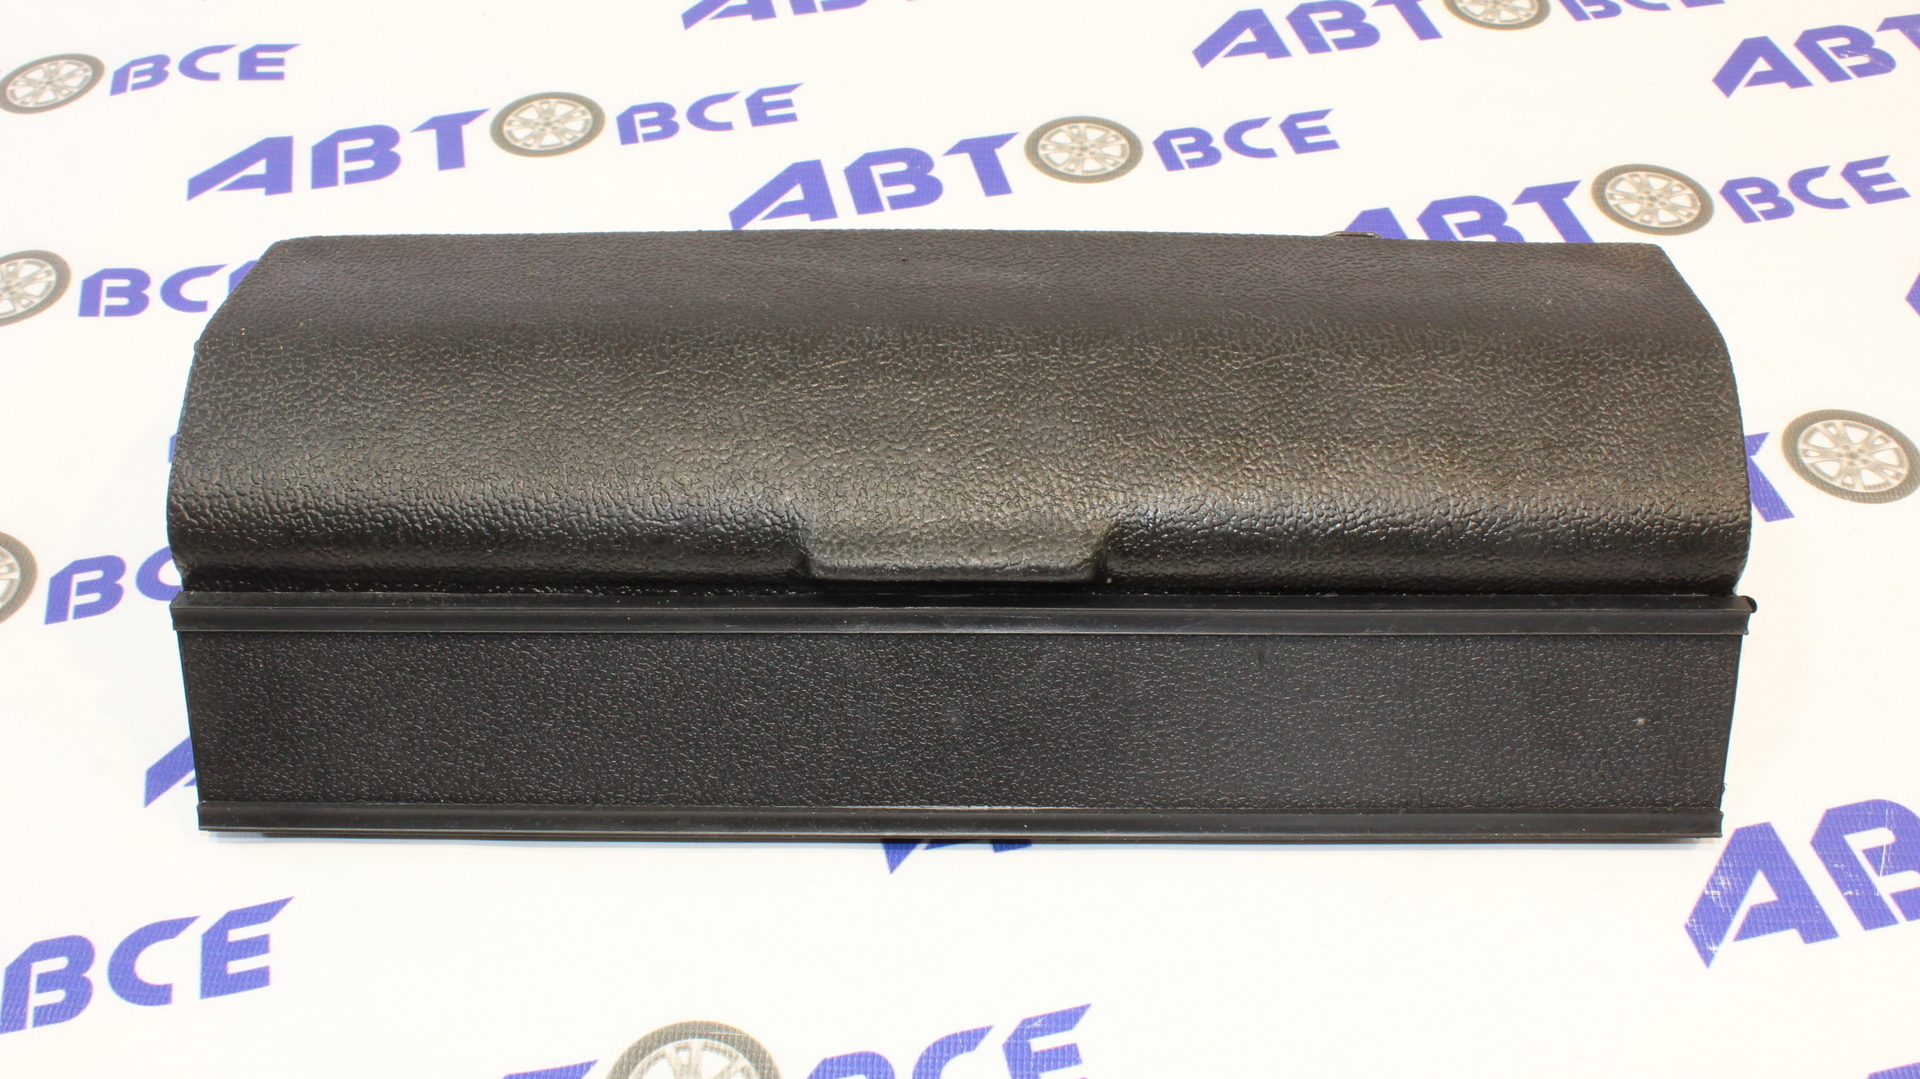 Крышка вещевого ящика (бардачок) ВАЗ-2106 в сборе завод Сызрань